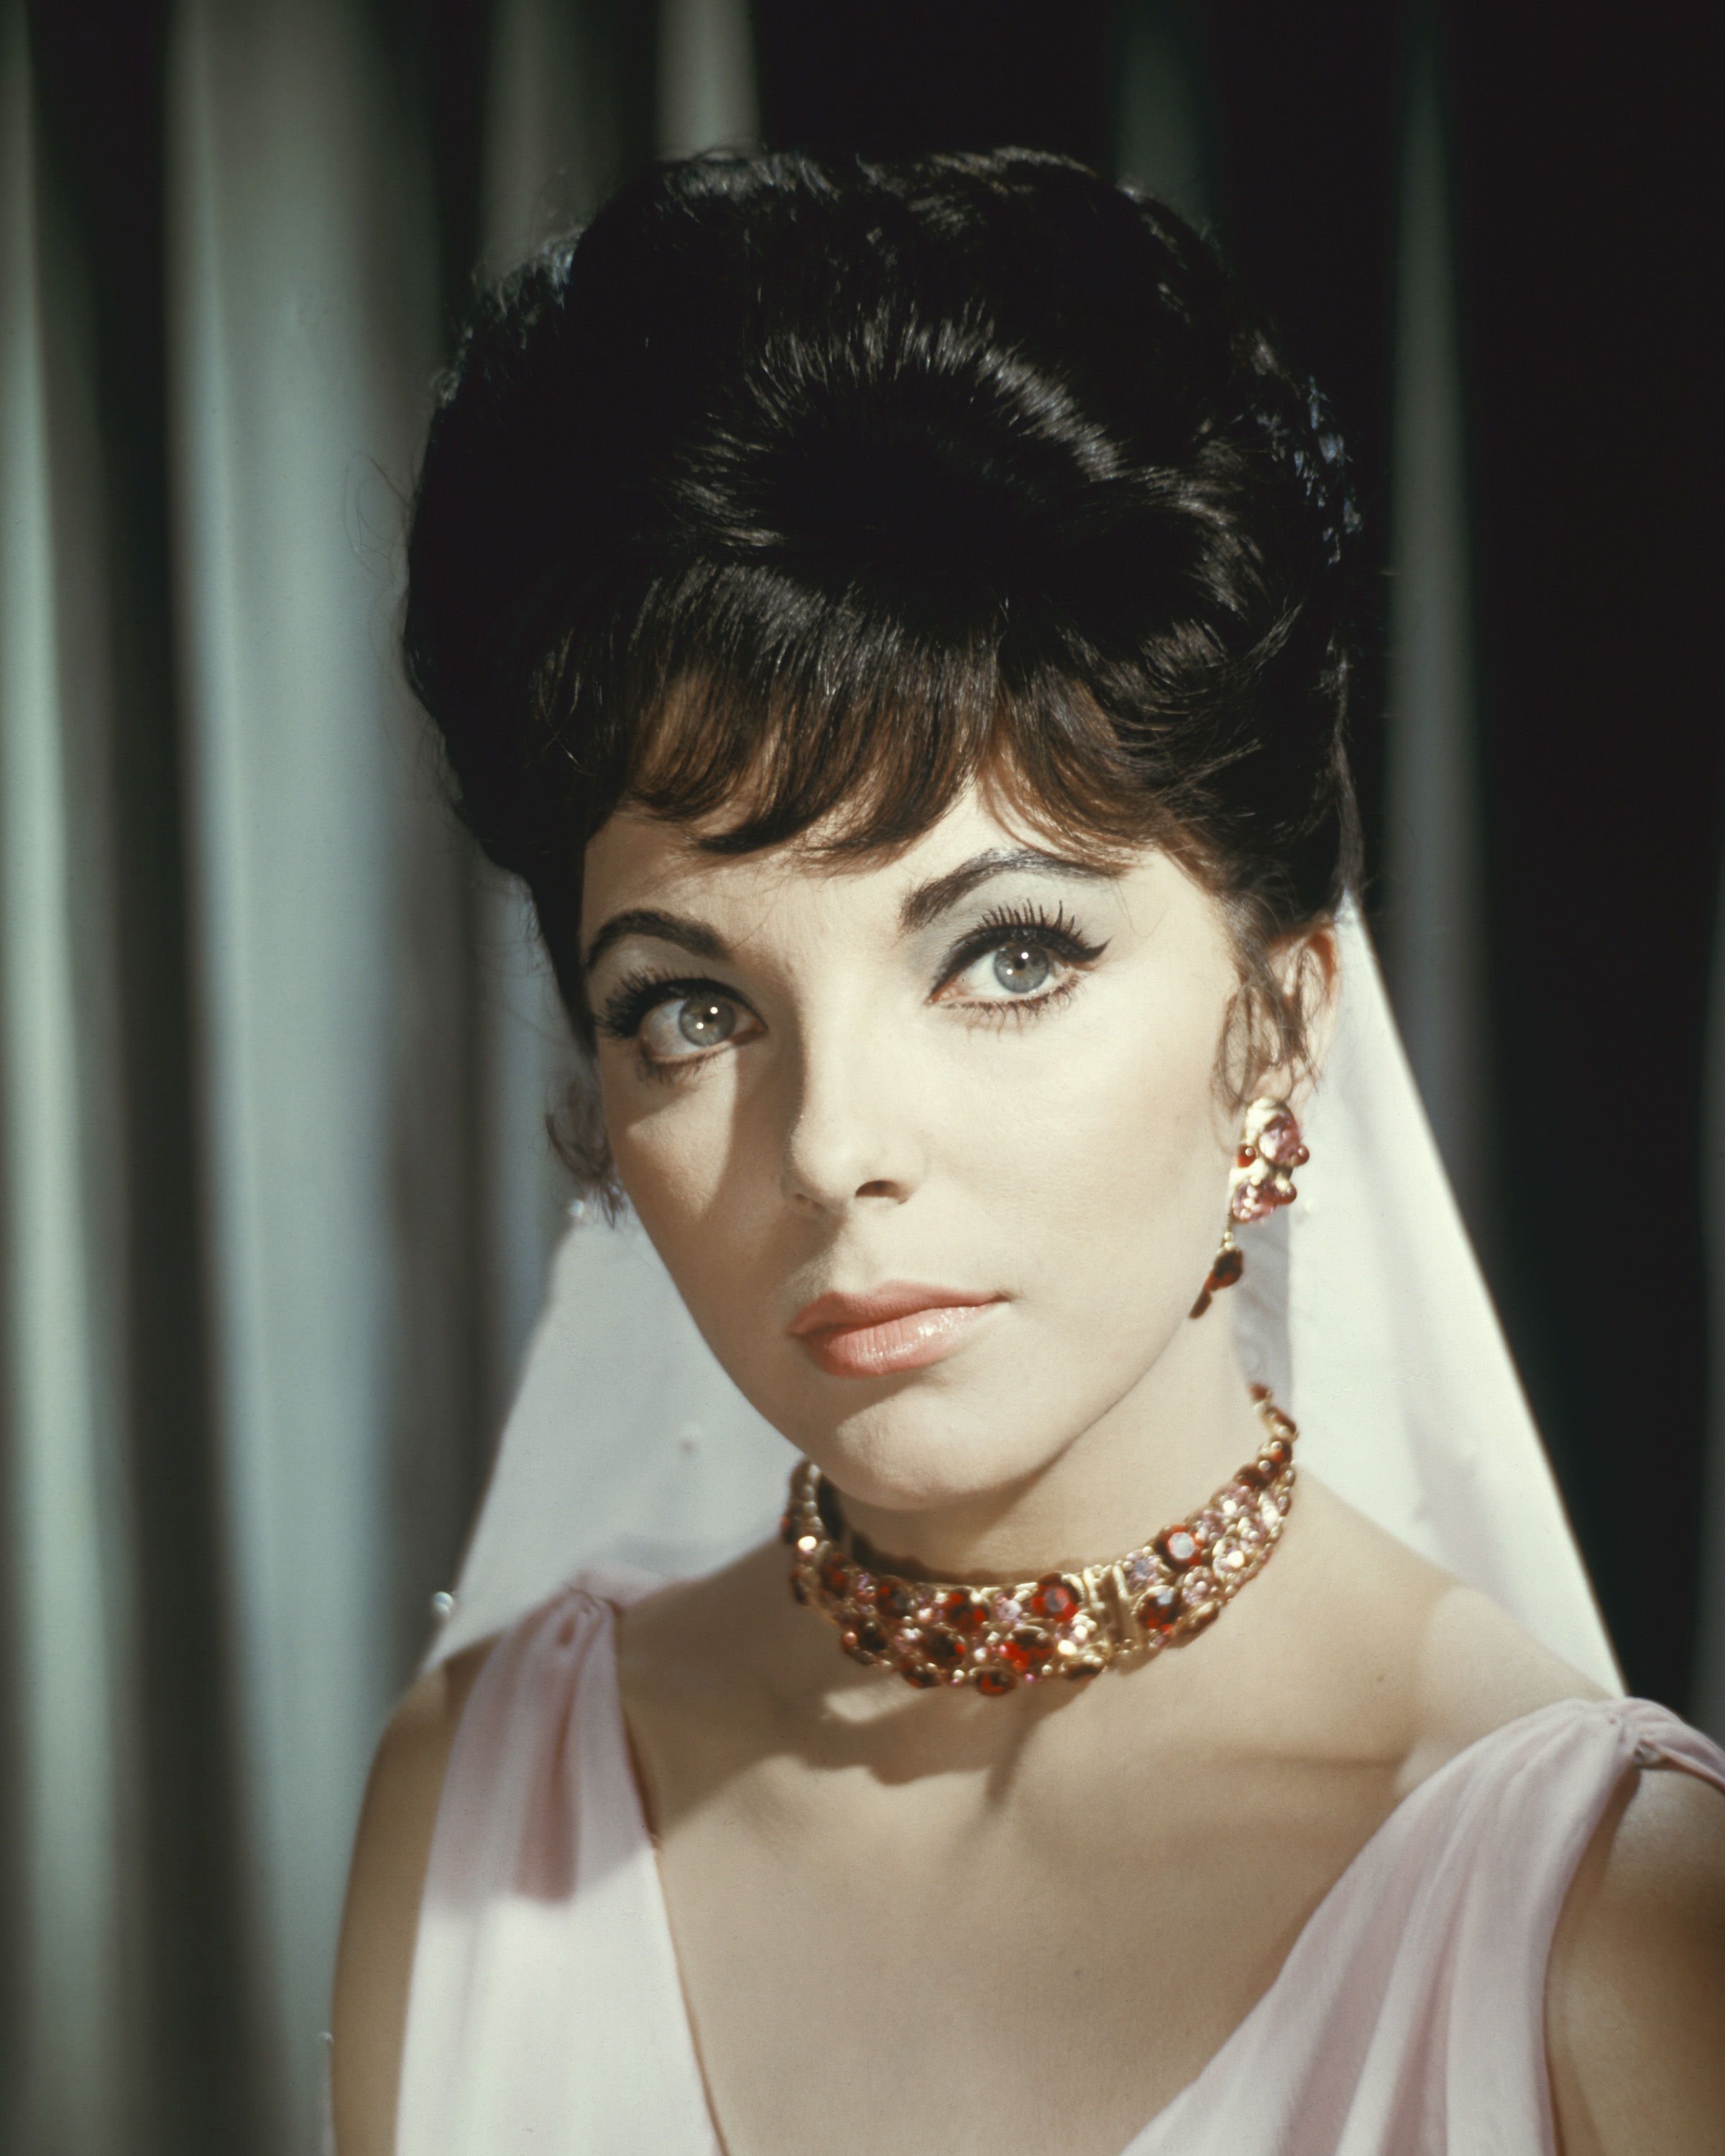 Joan Collins sur le plateau de tournage d'"Esther et le roi", 1960 | Source : Getty Images